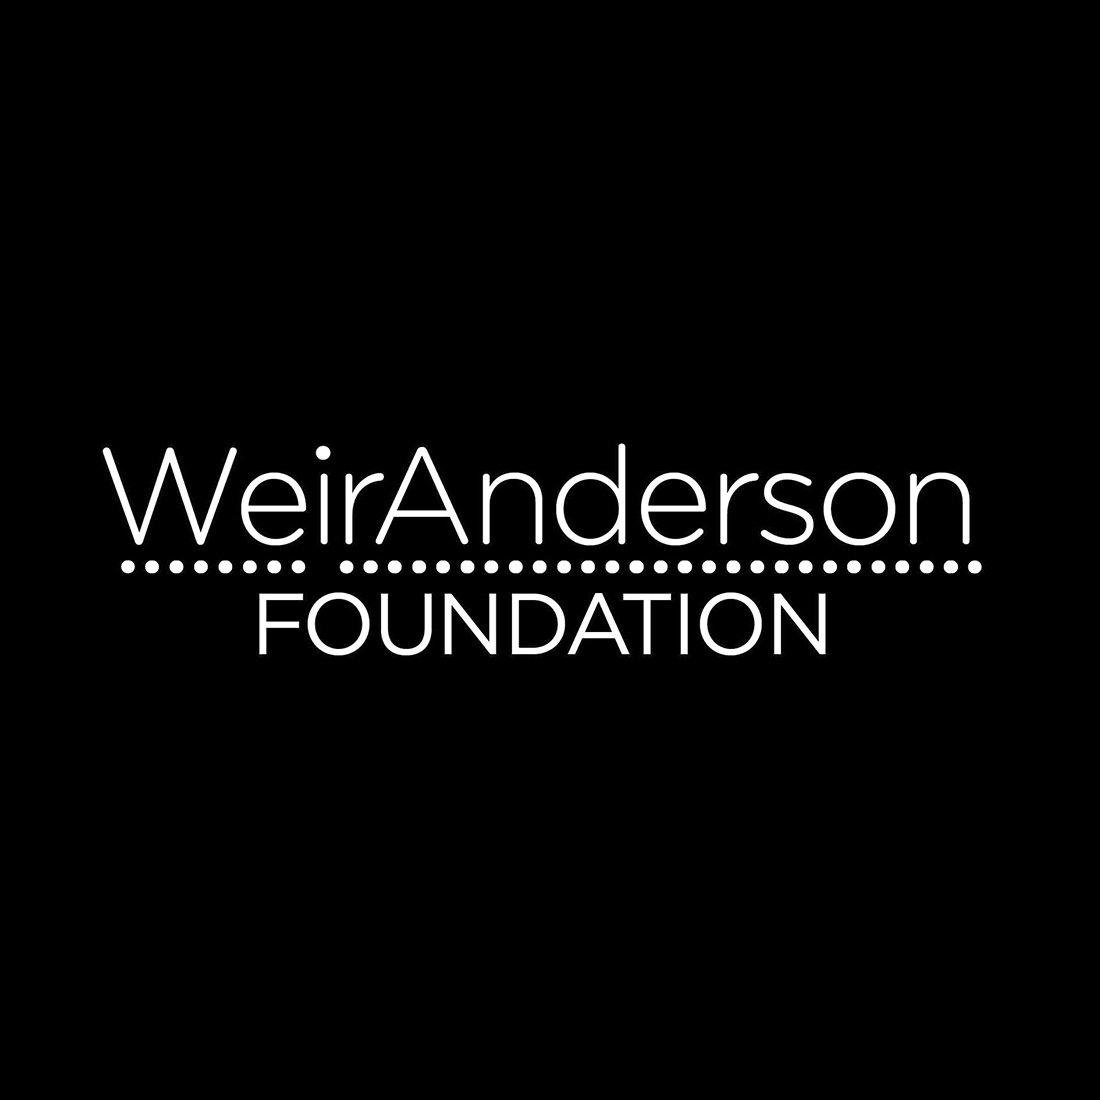 WeirAndersonFoundation_logo white.jpg